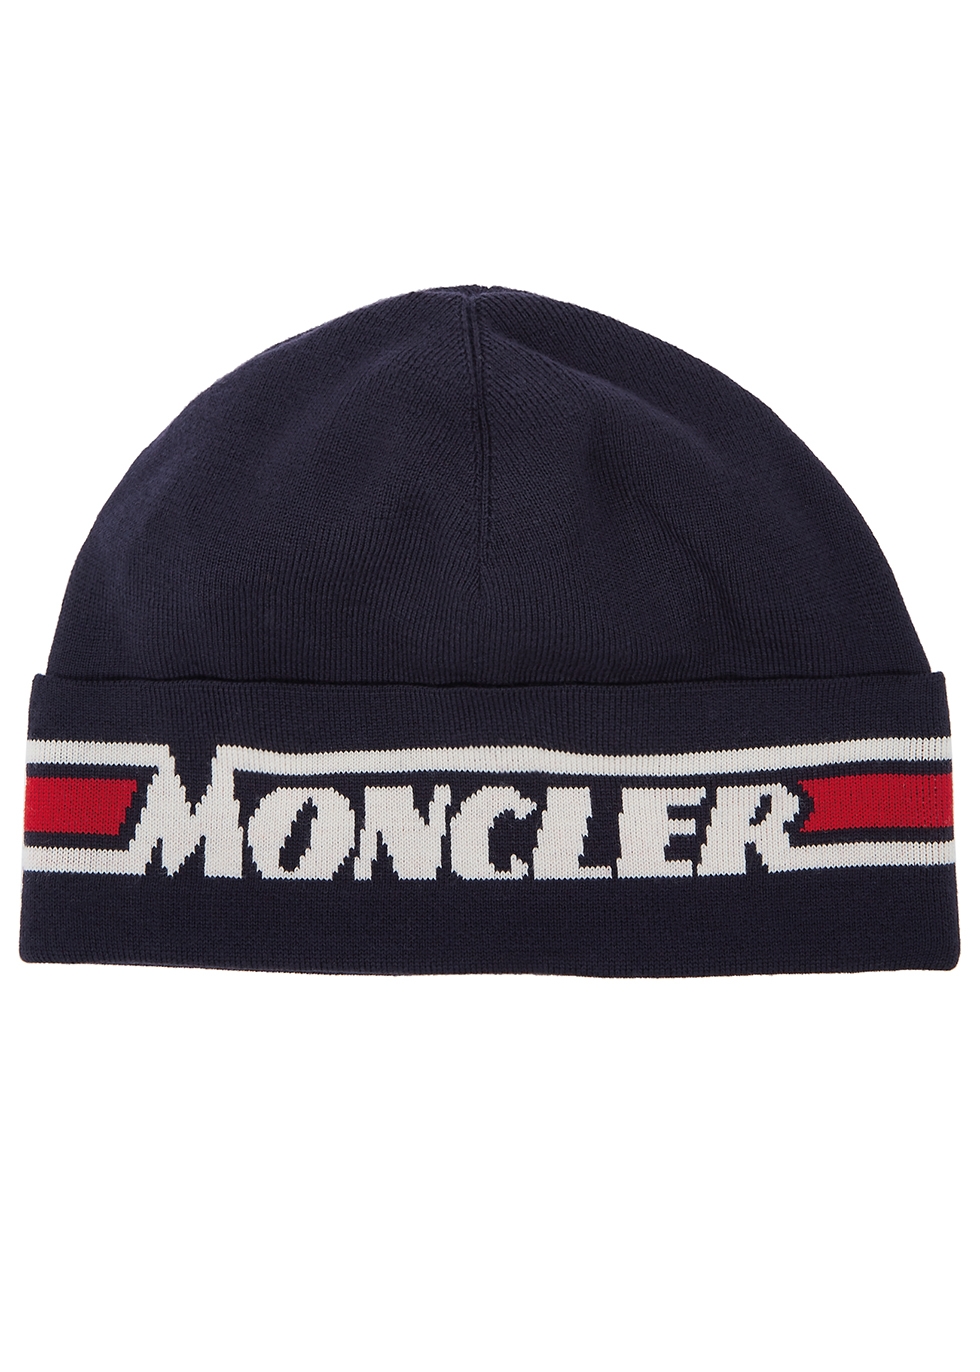 moncler skully hat